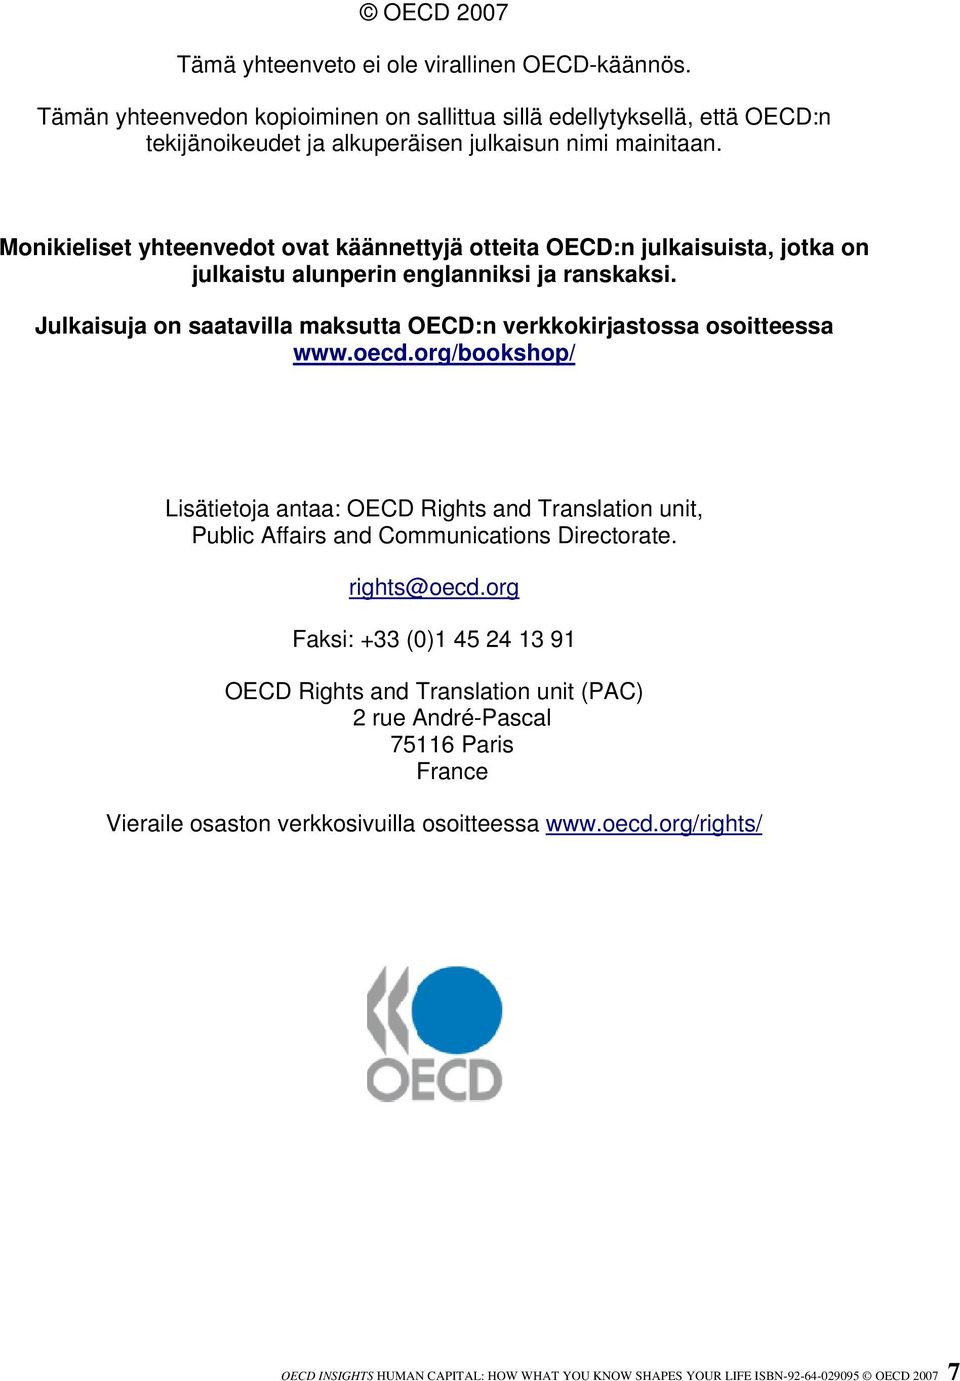 Julkaisuja on saatavilla maksutta OECD:n verkkokirjastossa osoitteessa www.oecd.org/bookshop/ Lisätietoja antaa: OECD Rights and Translation unit, Public Affairs and Communications Directorate.